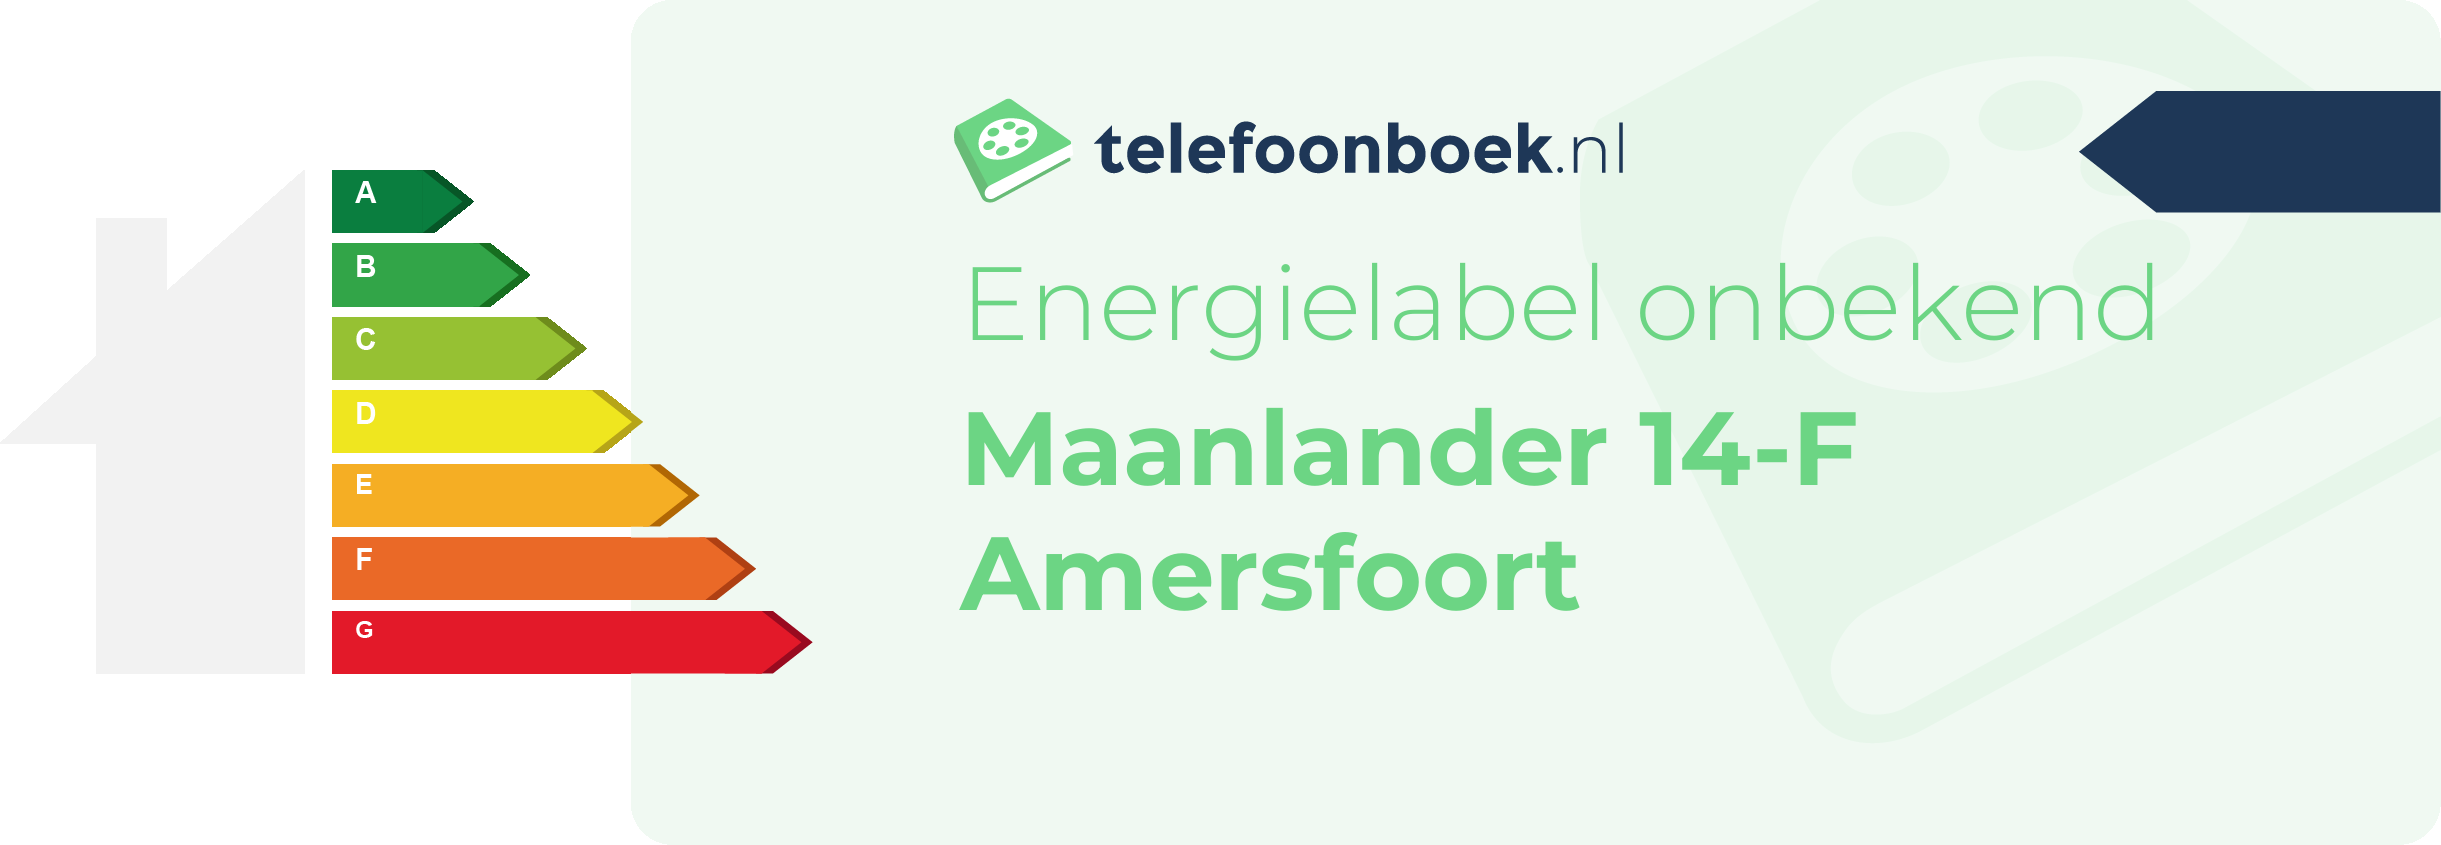 Energielabel Maanlander 14-F Amersfoort